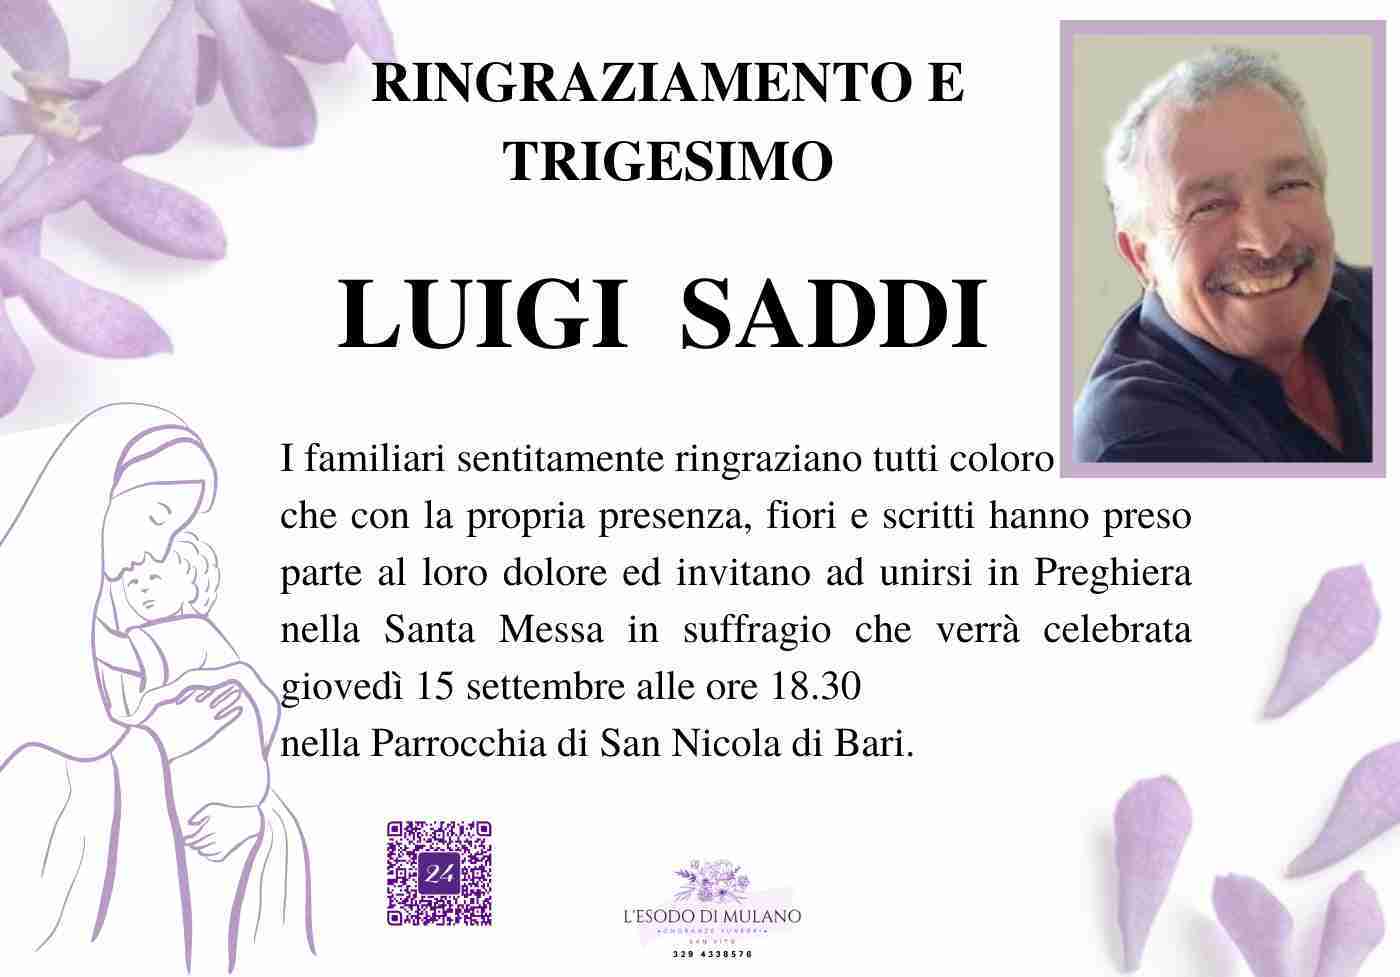 Luigi Saddi